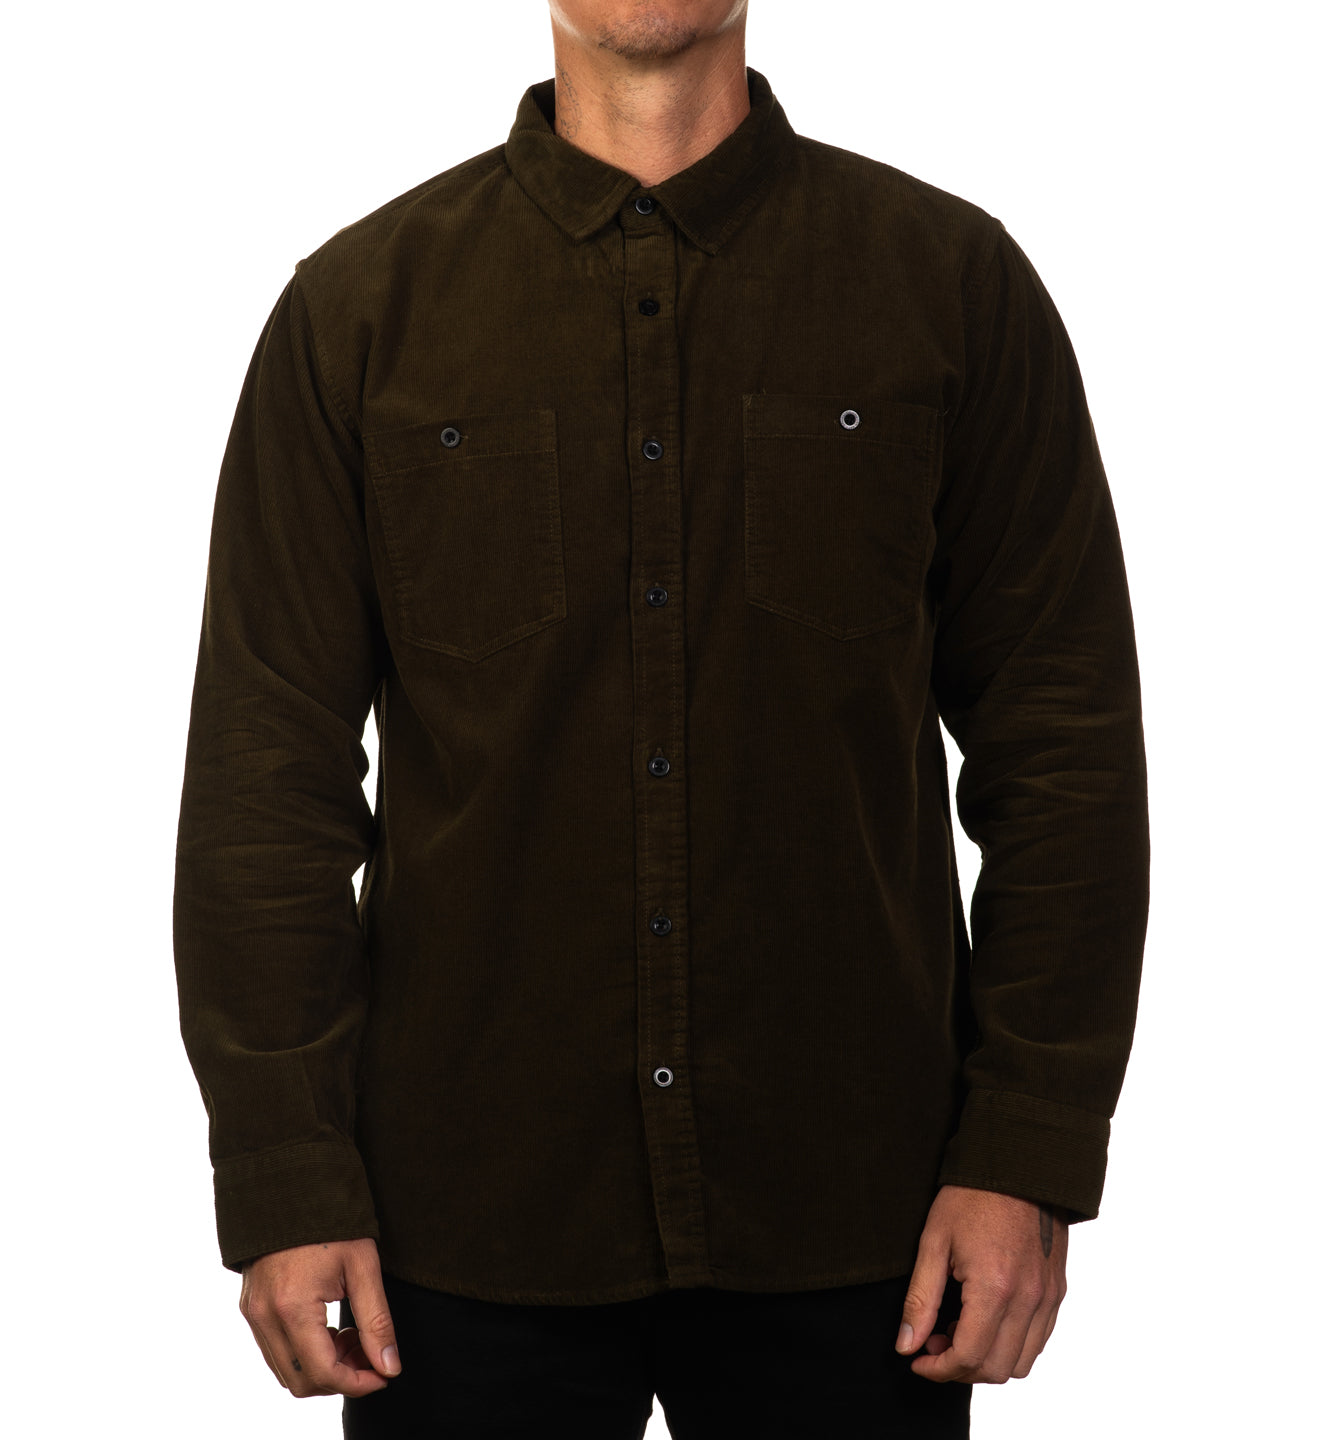 Full Nelson Corduroy Shirt Jacket - Olive